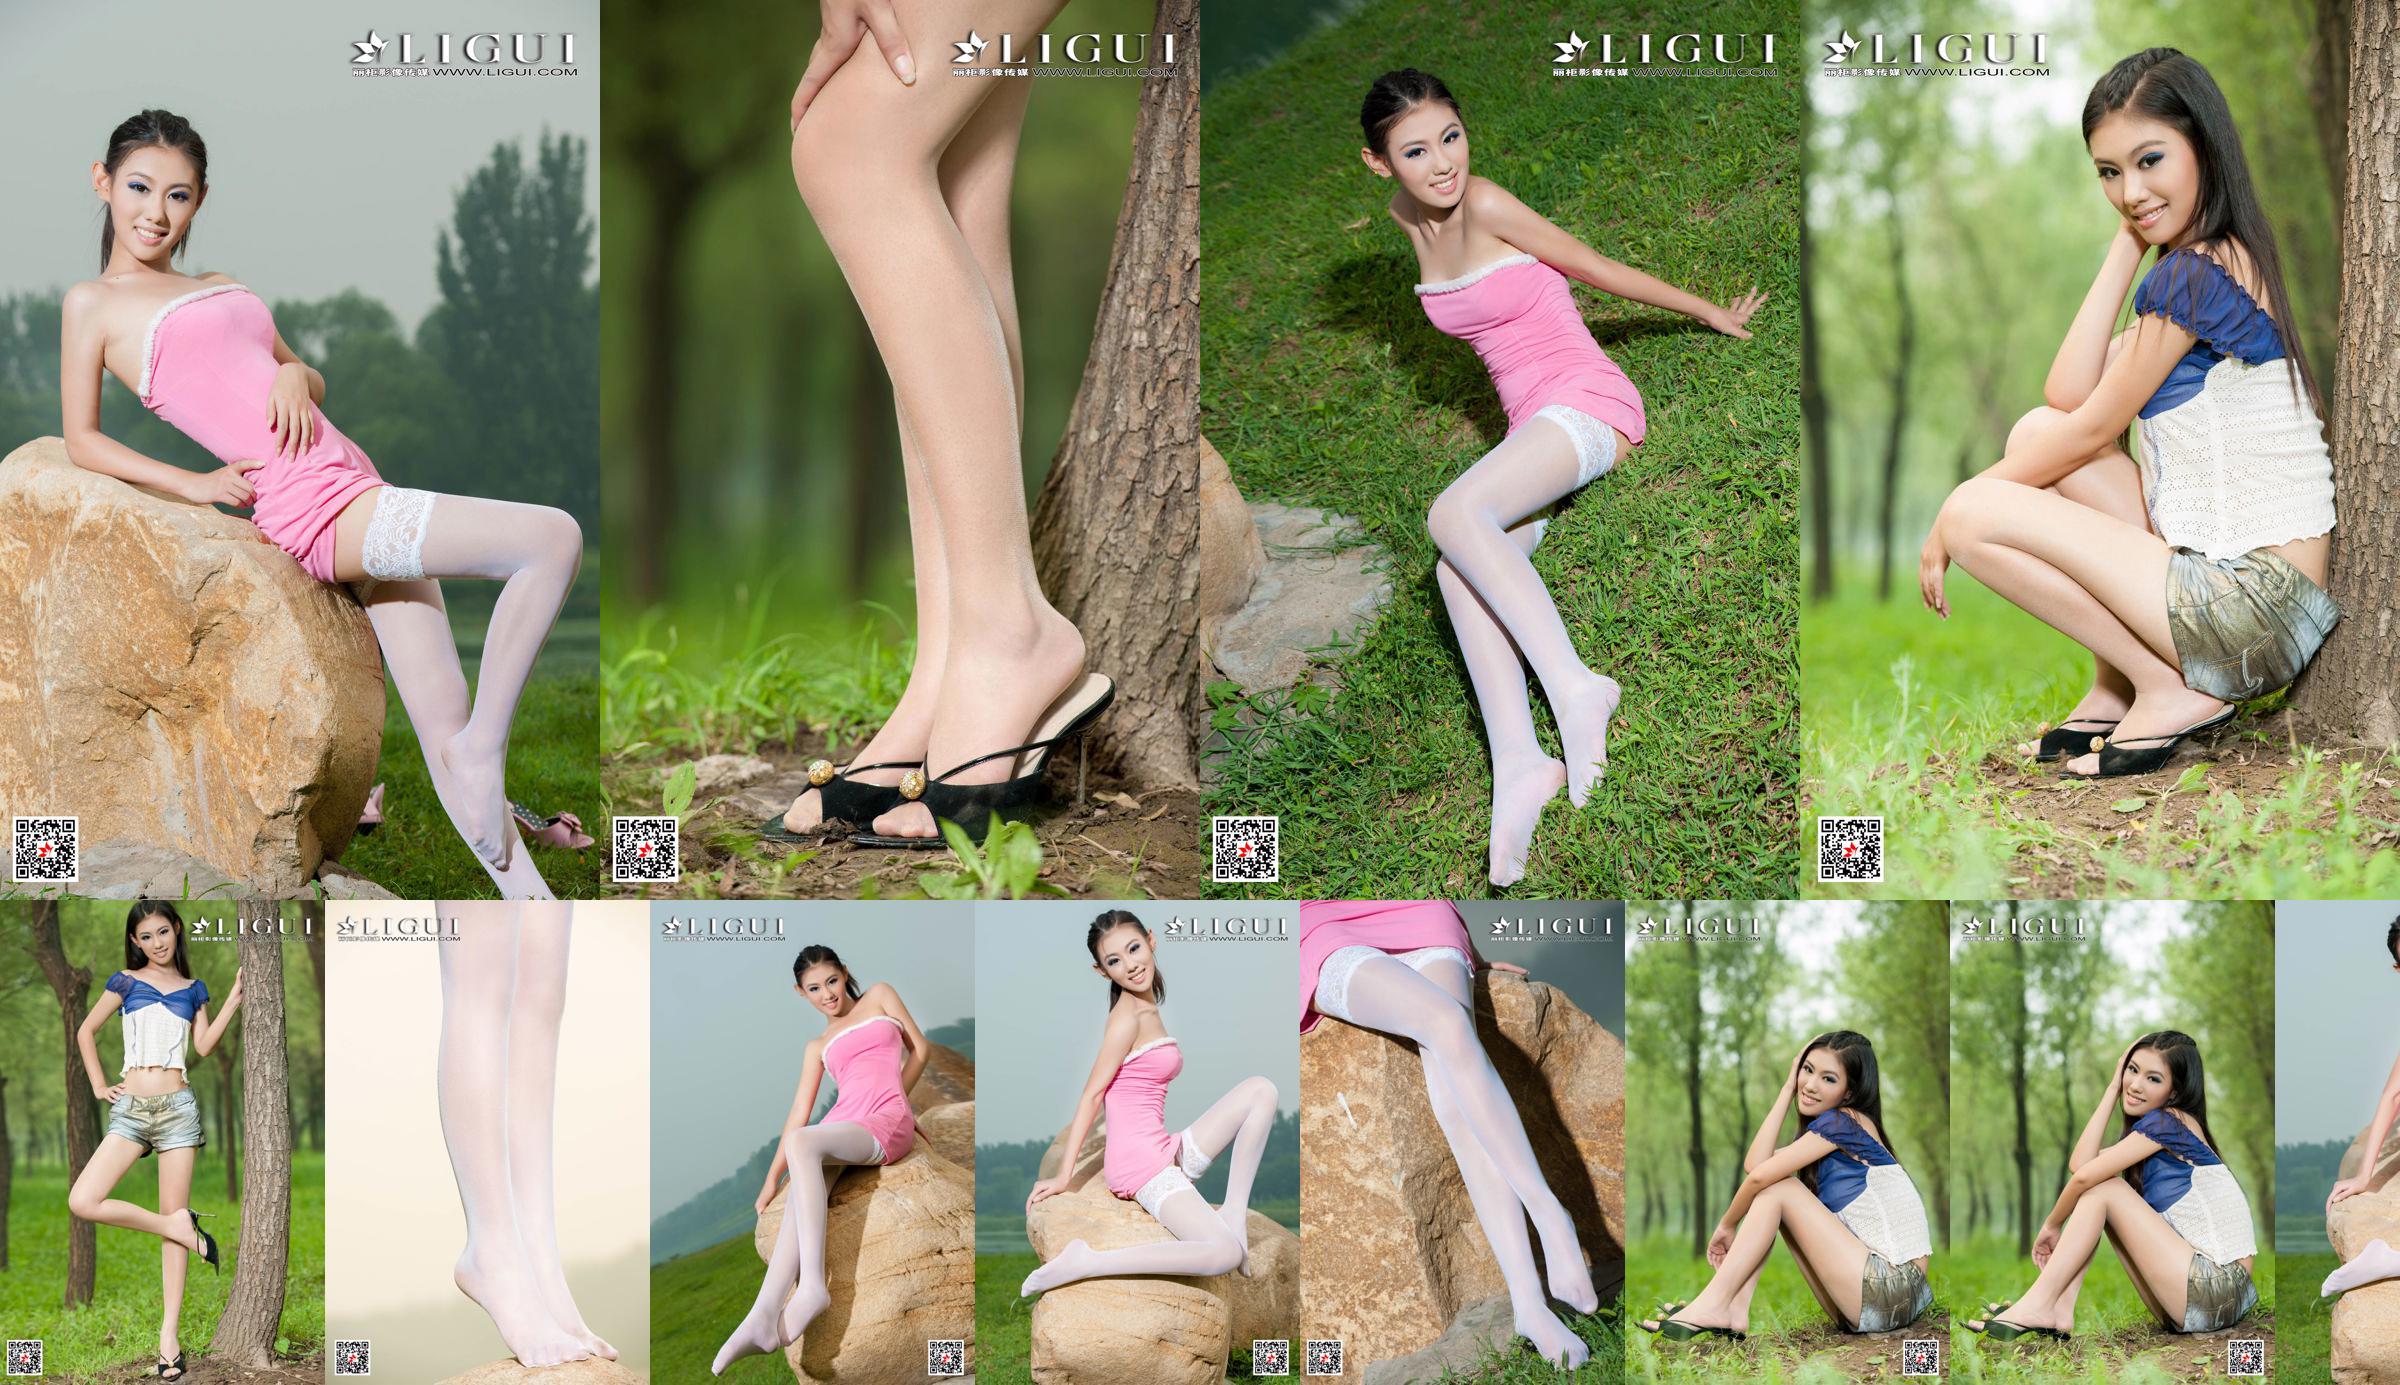 [丽 柜 Ligui] Model Wei Ling "Long Leg Girl" Mooie benen No.bc78bf Pagina 1